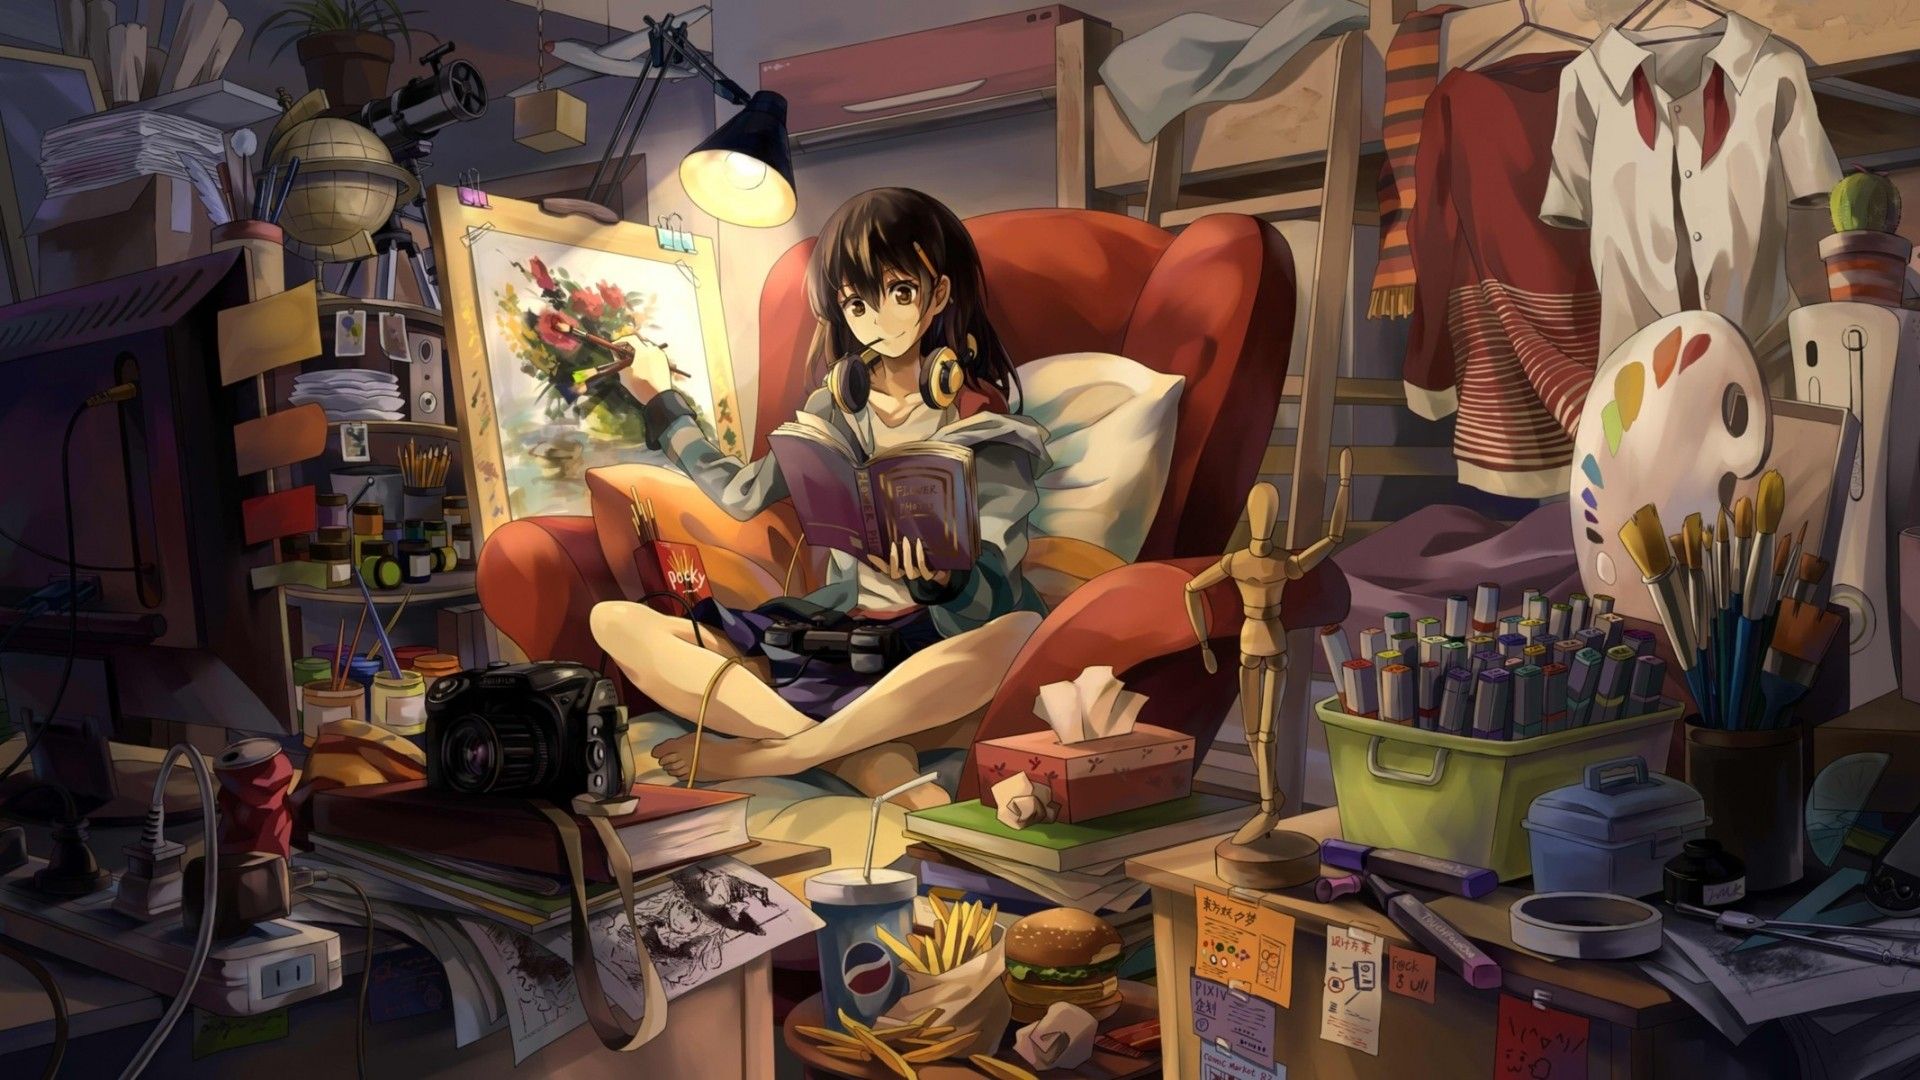 1920x1080 Anime Gamer Girl on WallpaperBat